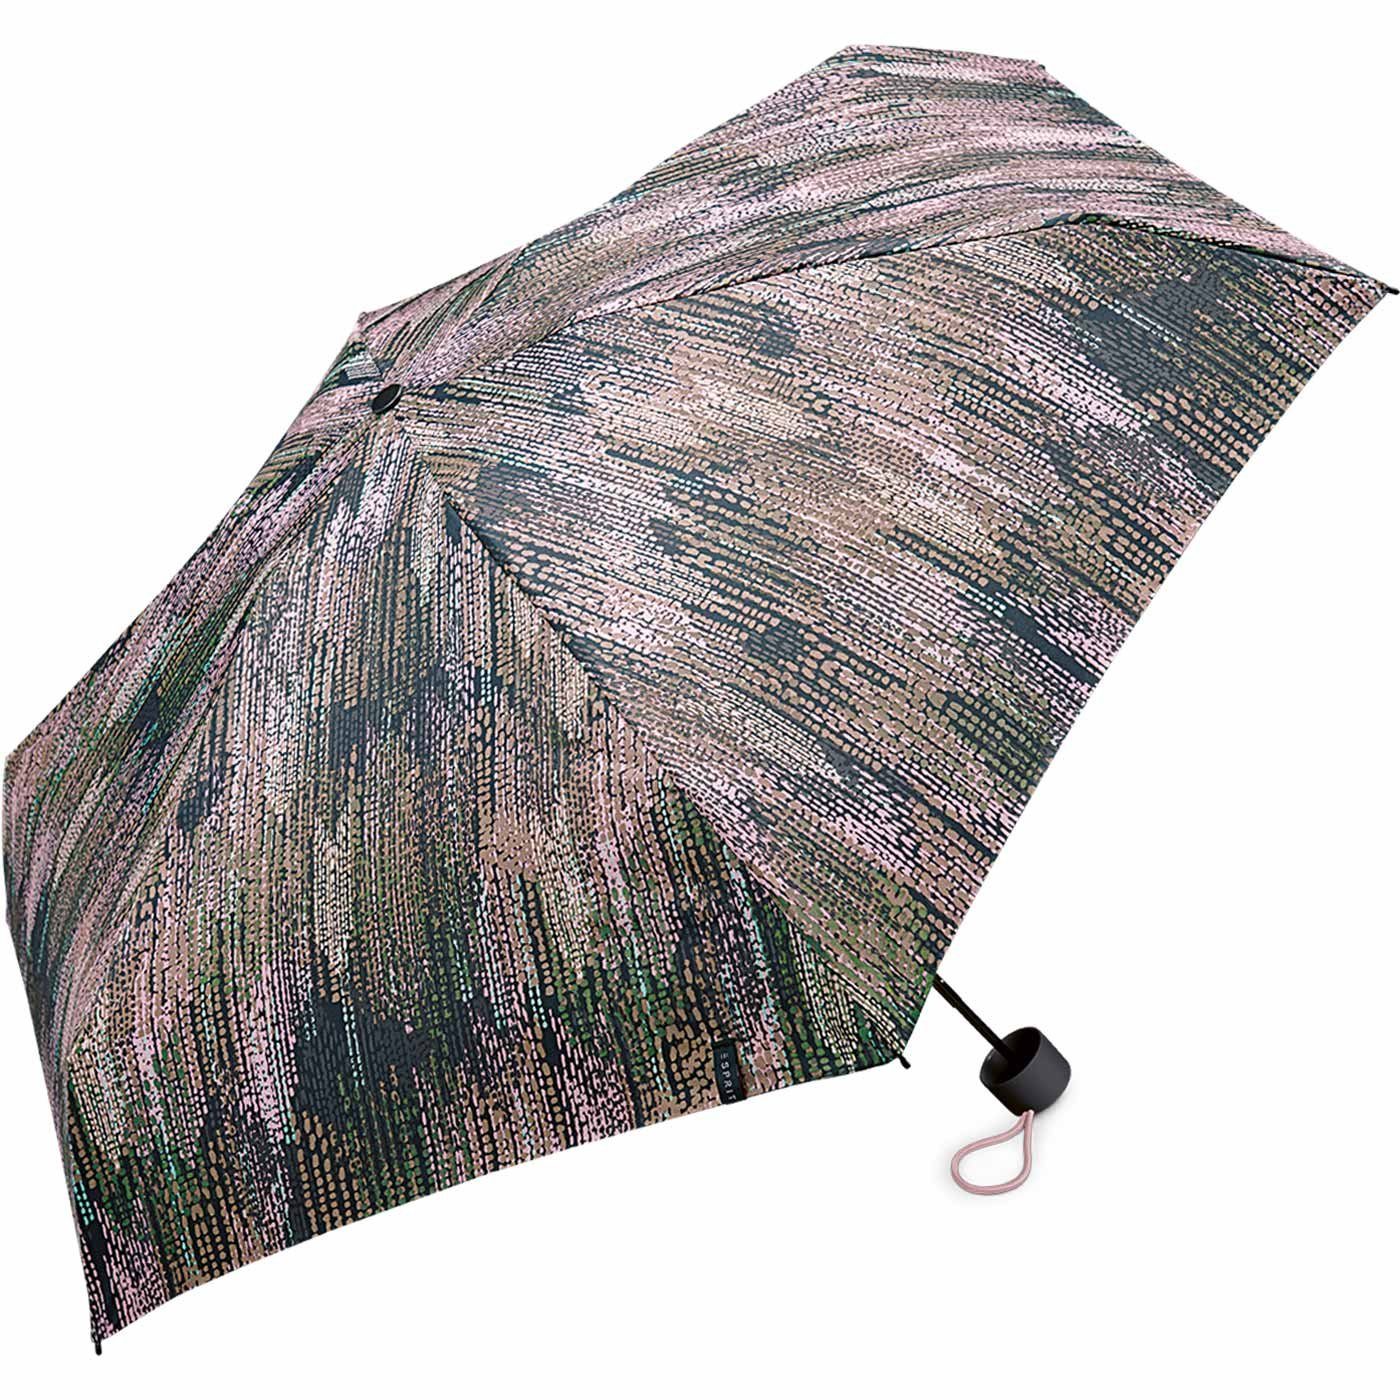 Damen Petito in Mini Regenschirm verwaschener gray, Super Optik Edges winzig gedeckter taupe klein, - Blurred Taschenregenschirm Esprit